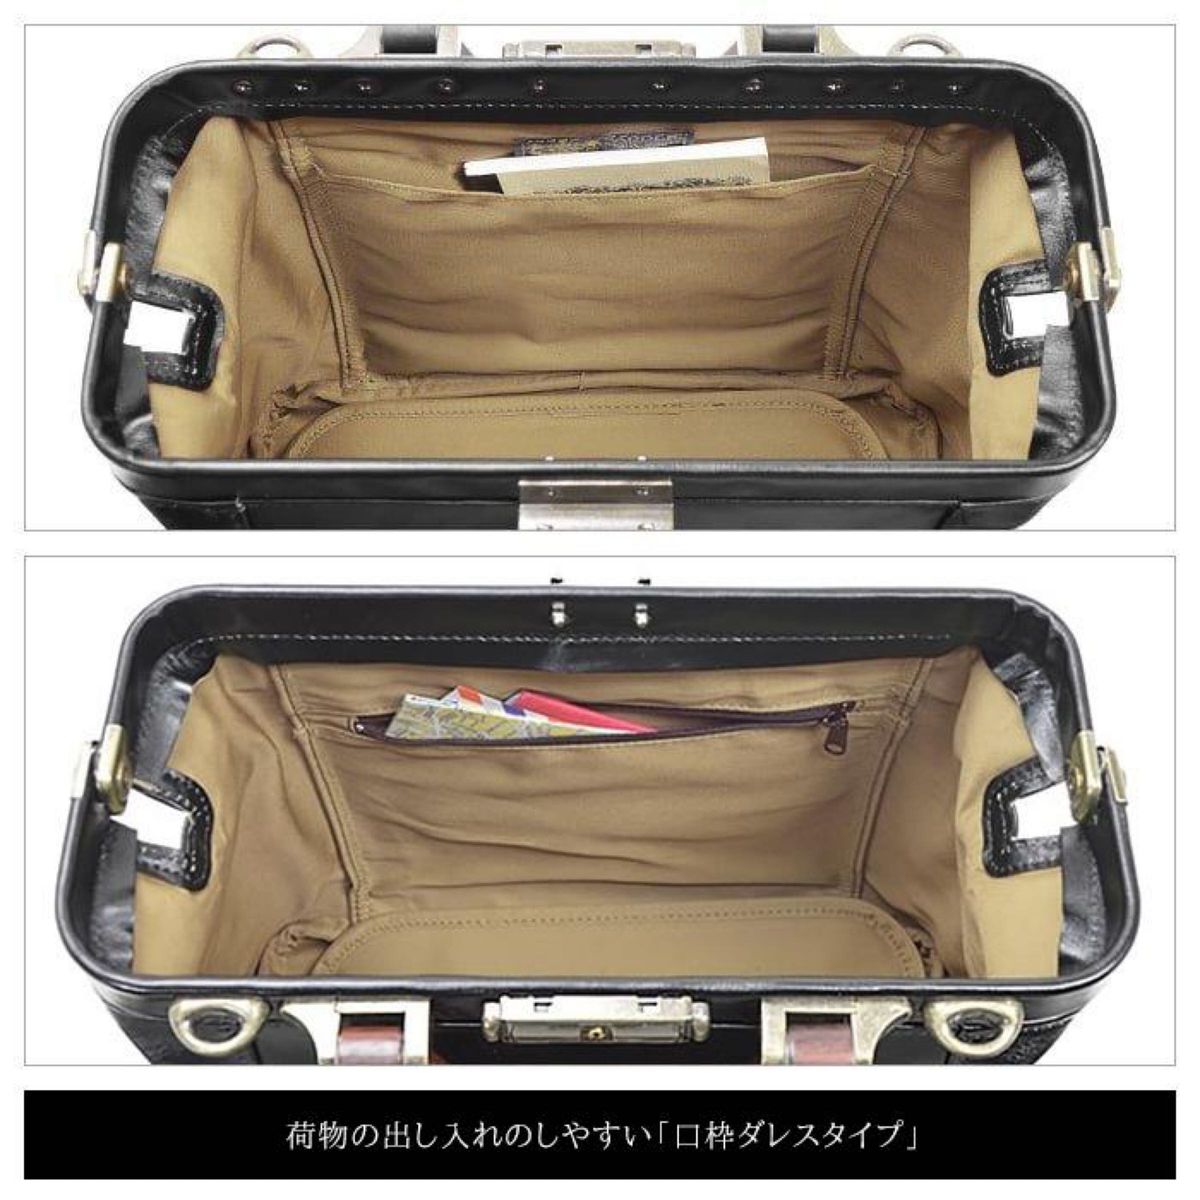 ミニダレスバッグ メンズ 天然木取手 2way 日本製 ボストンバッグ B5 鍵付き 軽量 自立 豊岡製鞄 送料無料 10431